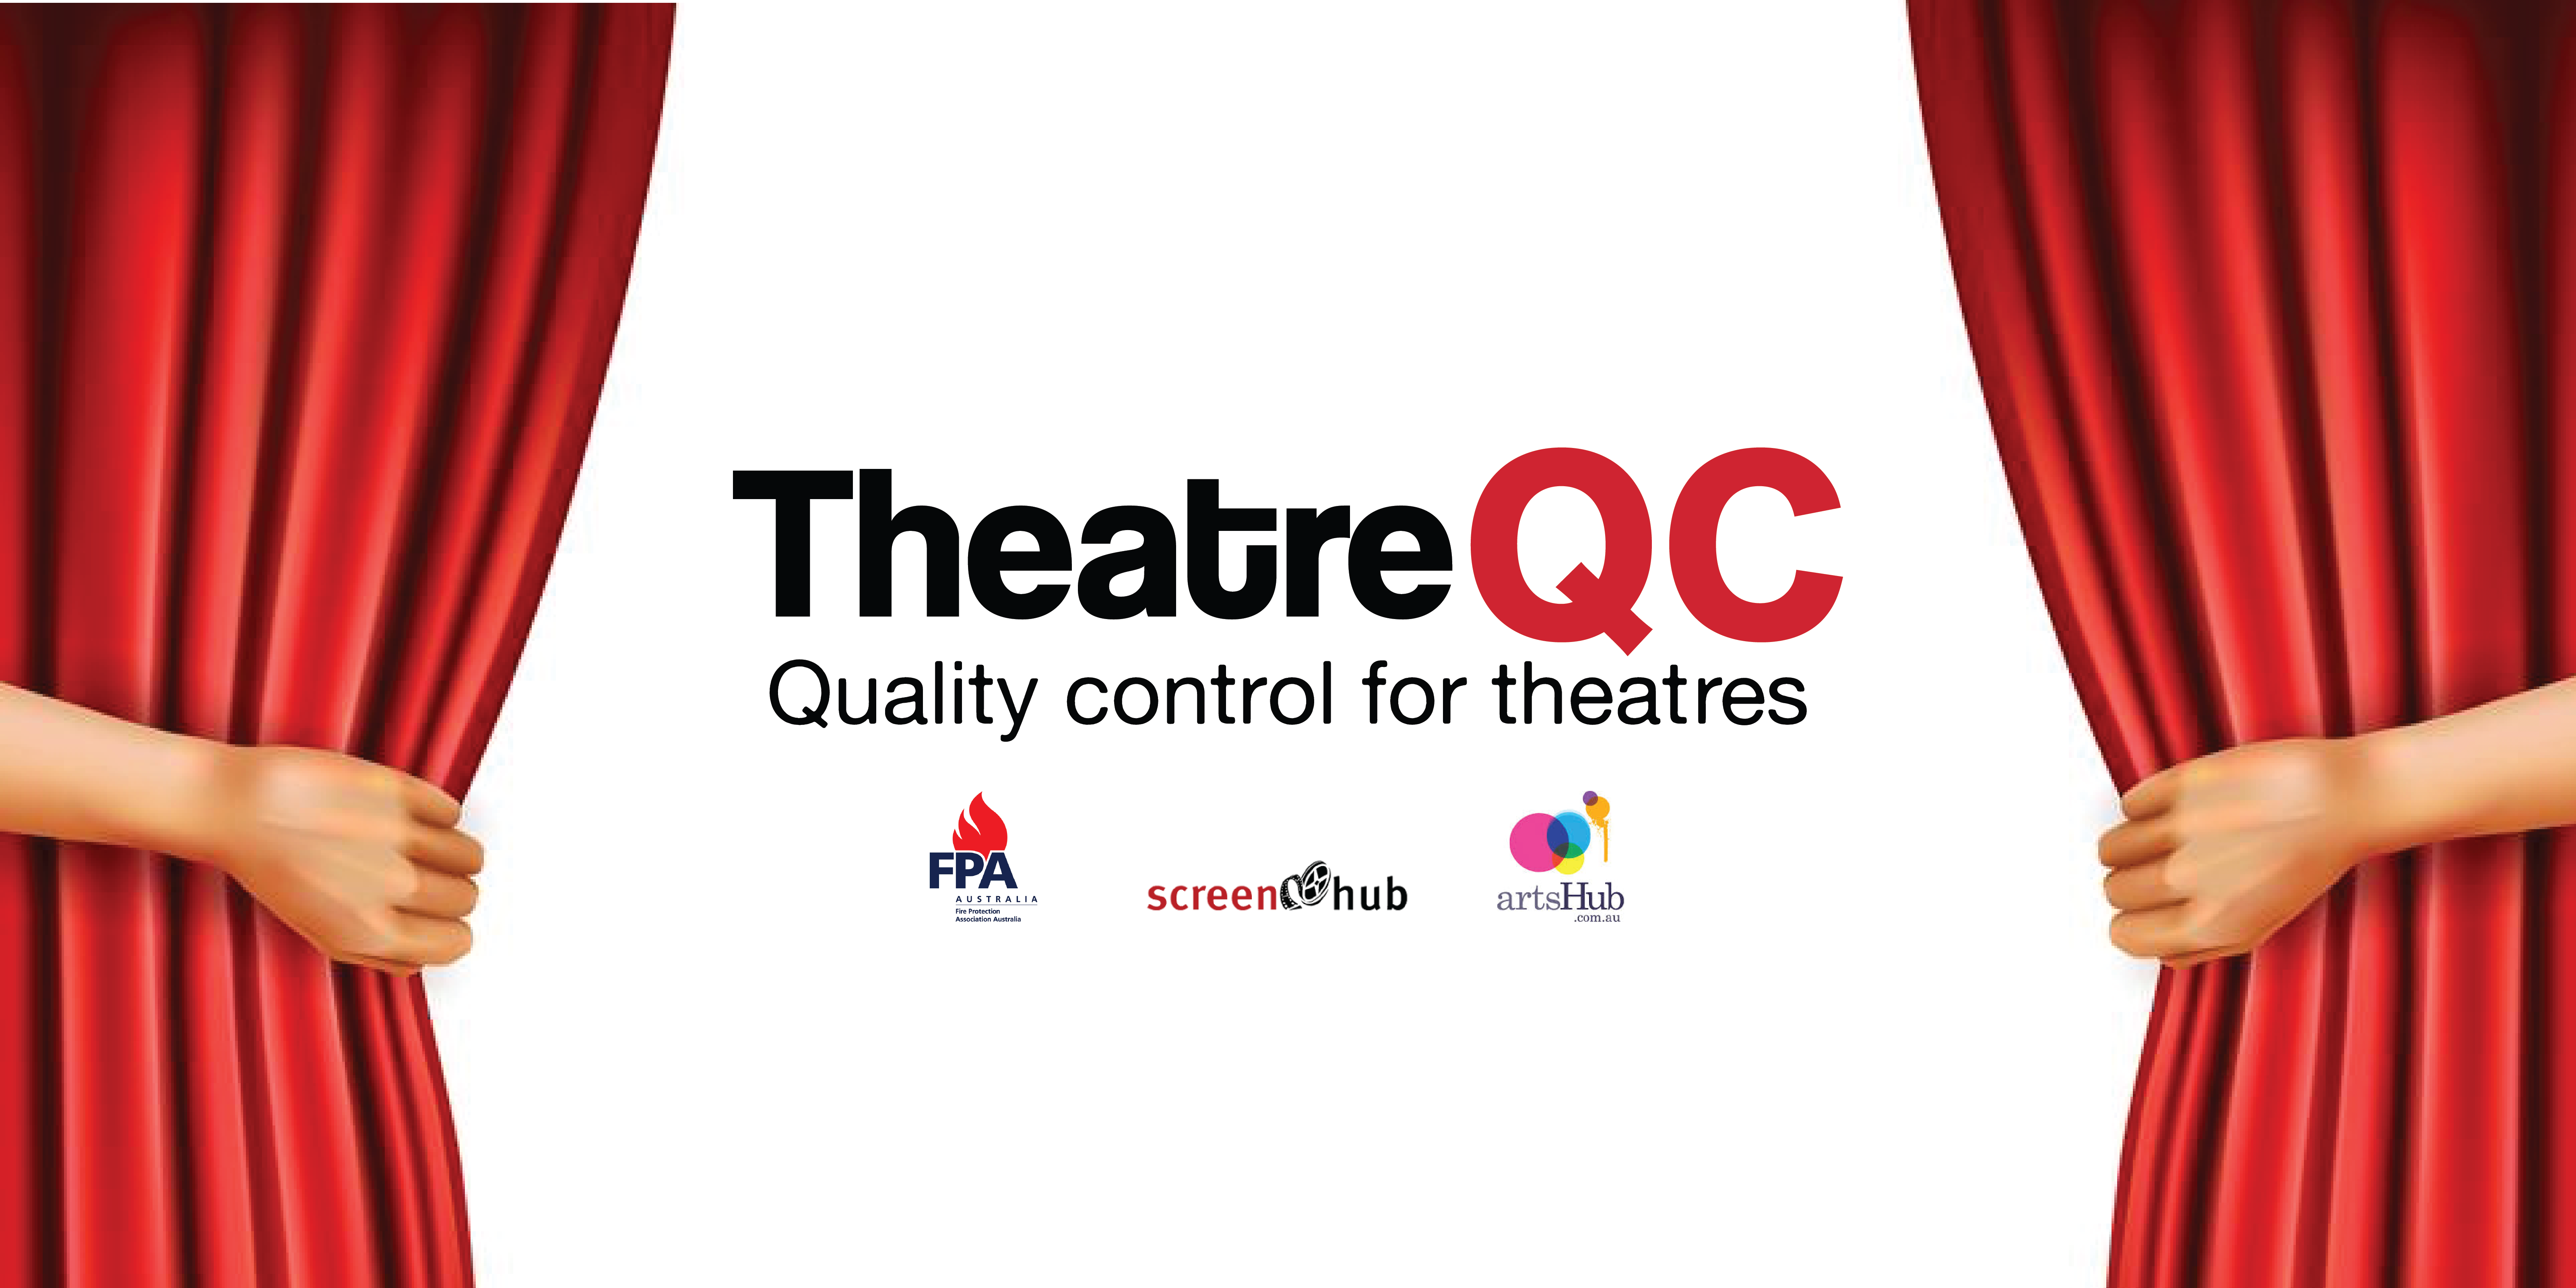 Images TheatreQC Pty Ltd